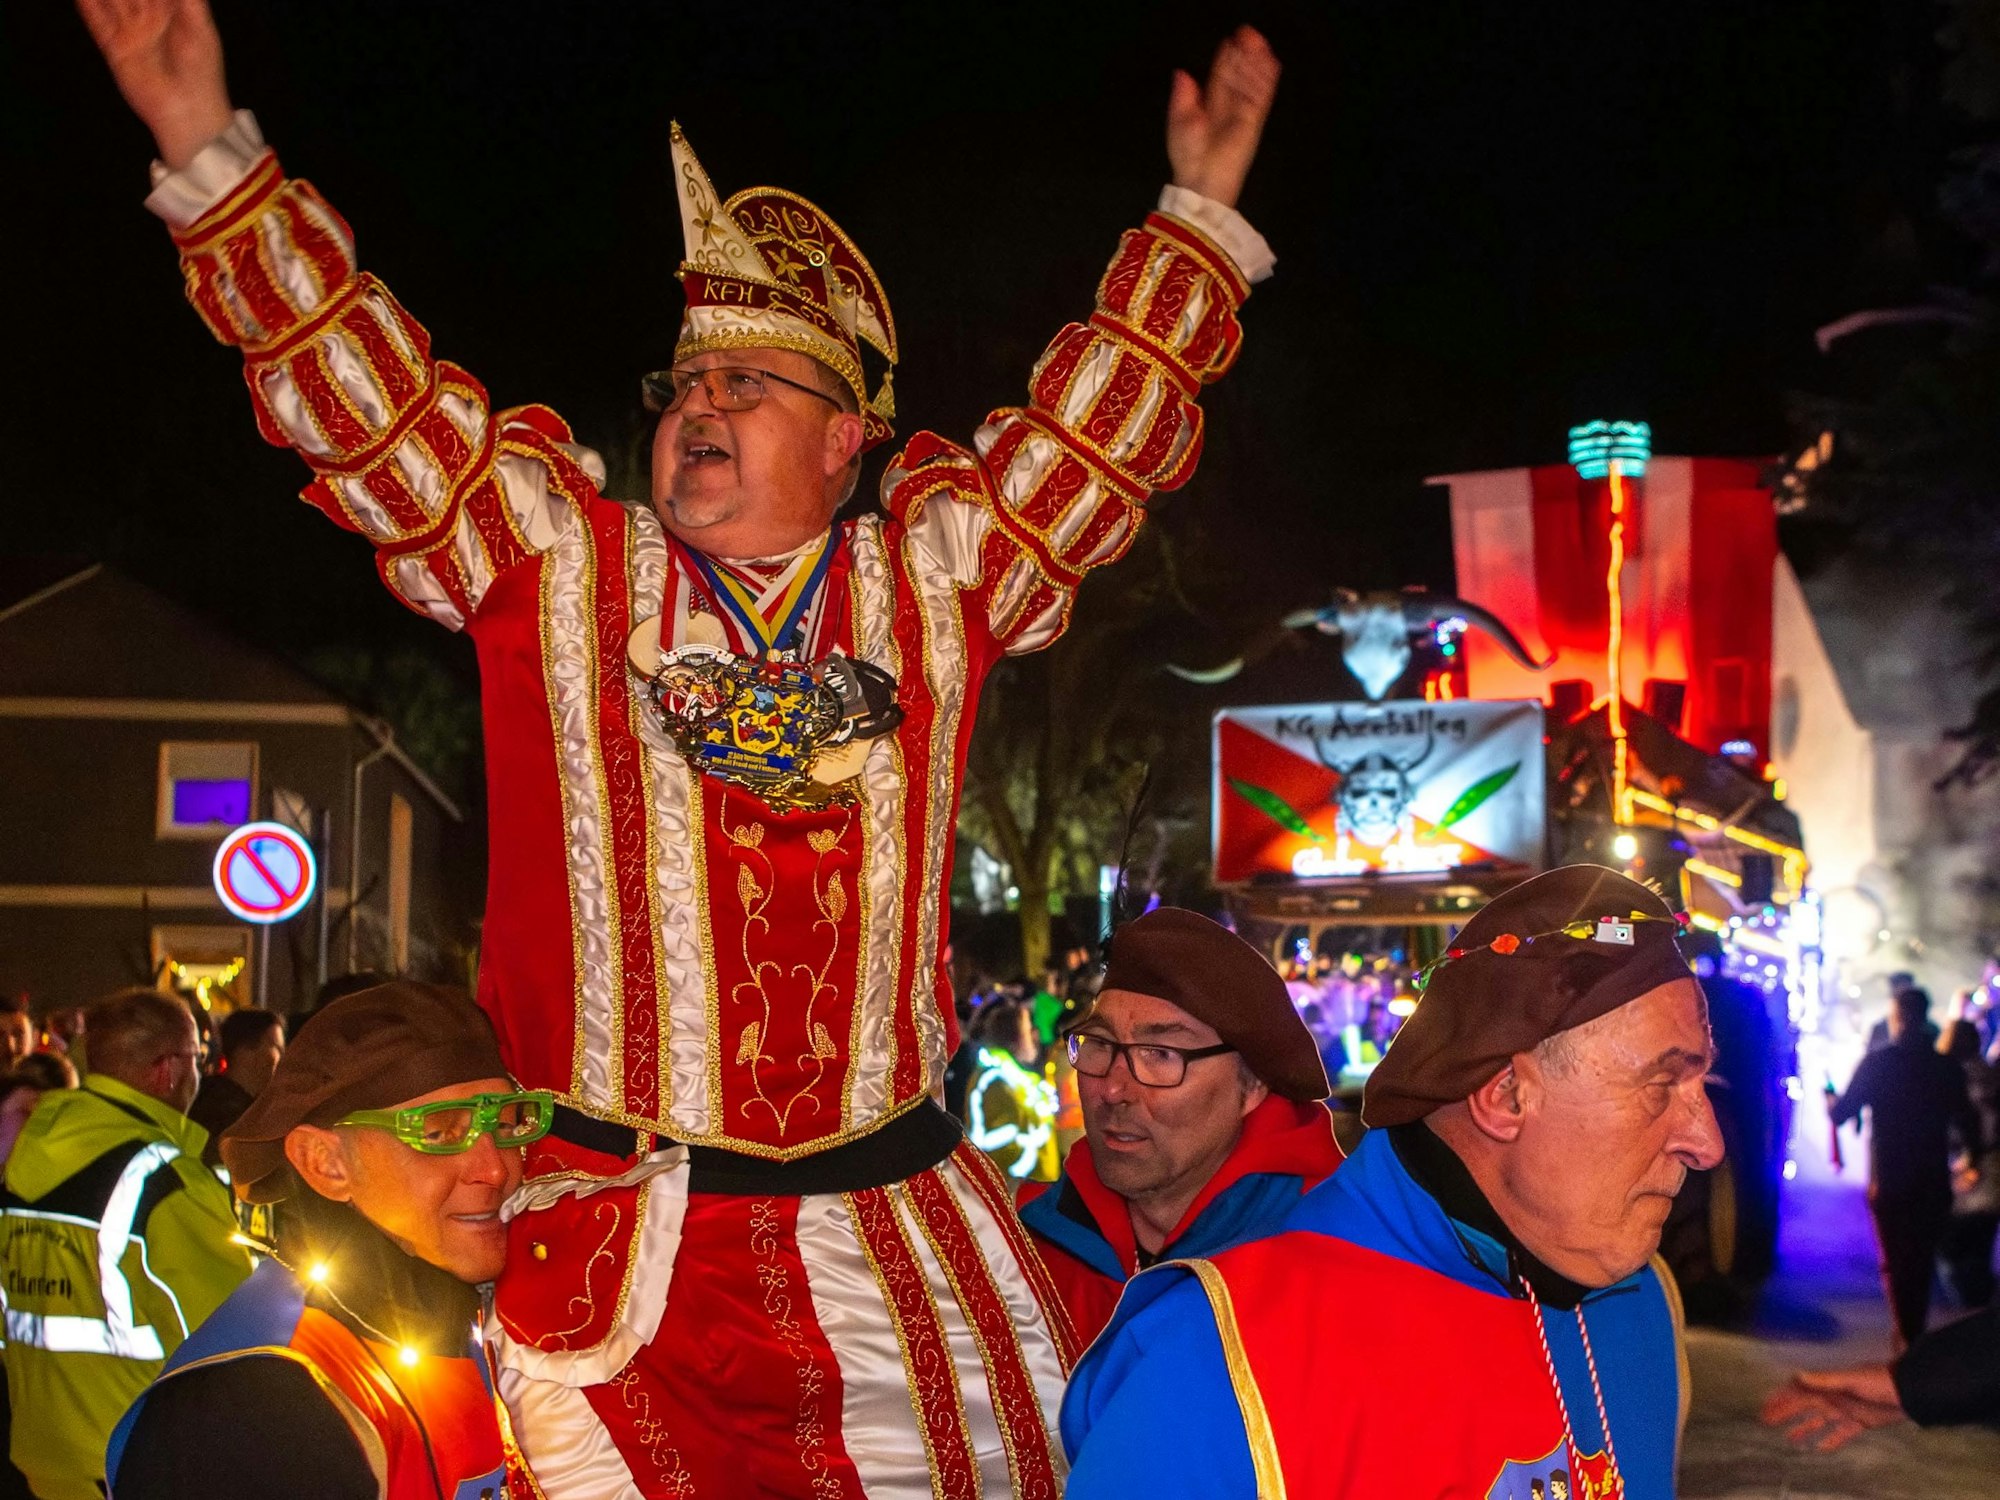 Der Karnevalsprinz von Holzheim feiert den Lichterzug in Eiserfey.